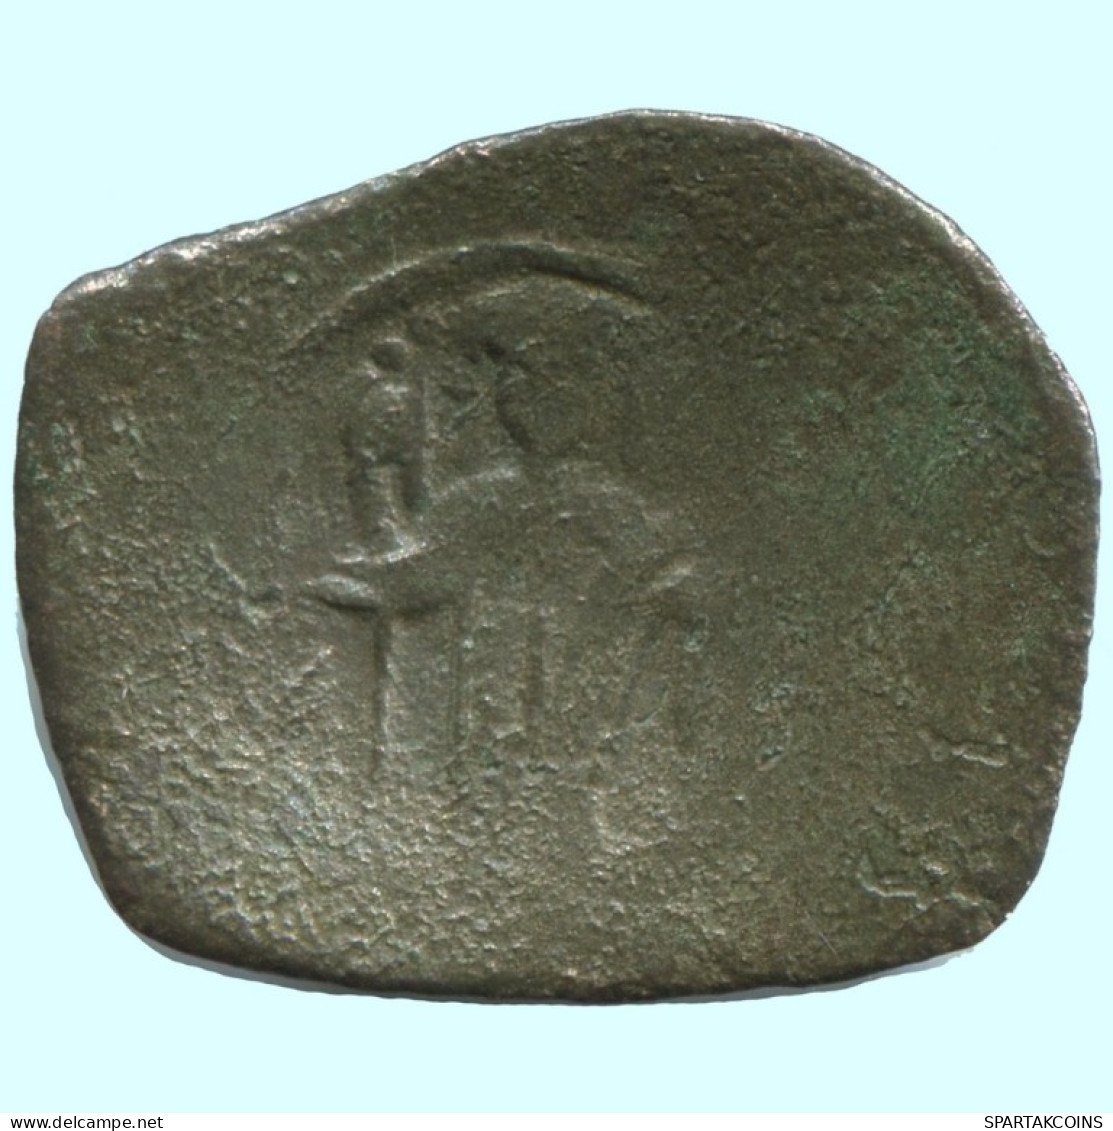 TRACHY BYZANTINISCHE Münze  EMPIRE Antike Authentisch Münze 1g/19mm #AG642.4.D.A - Byzantines